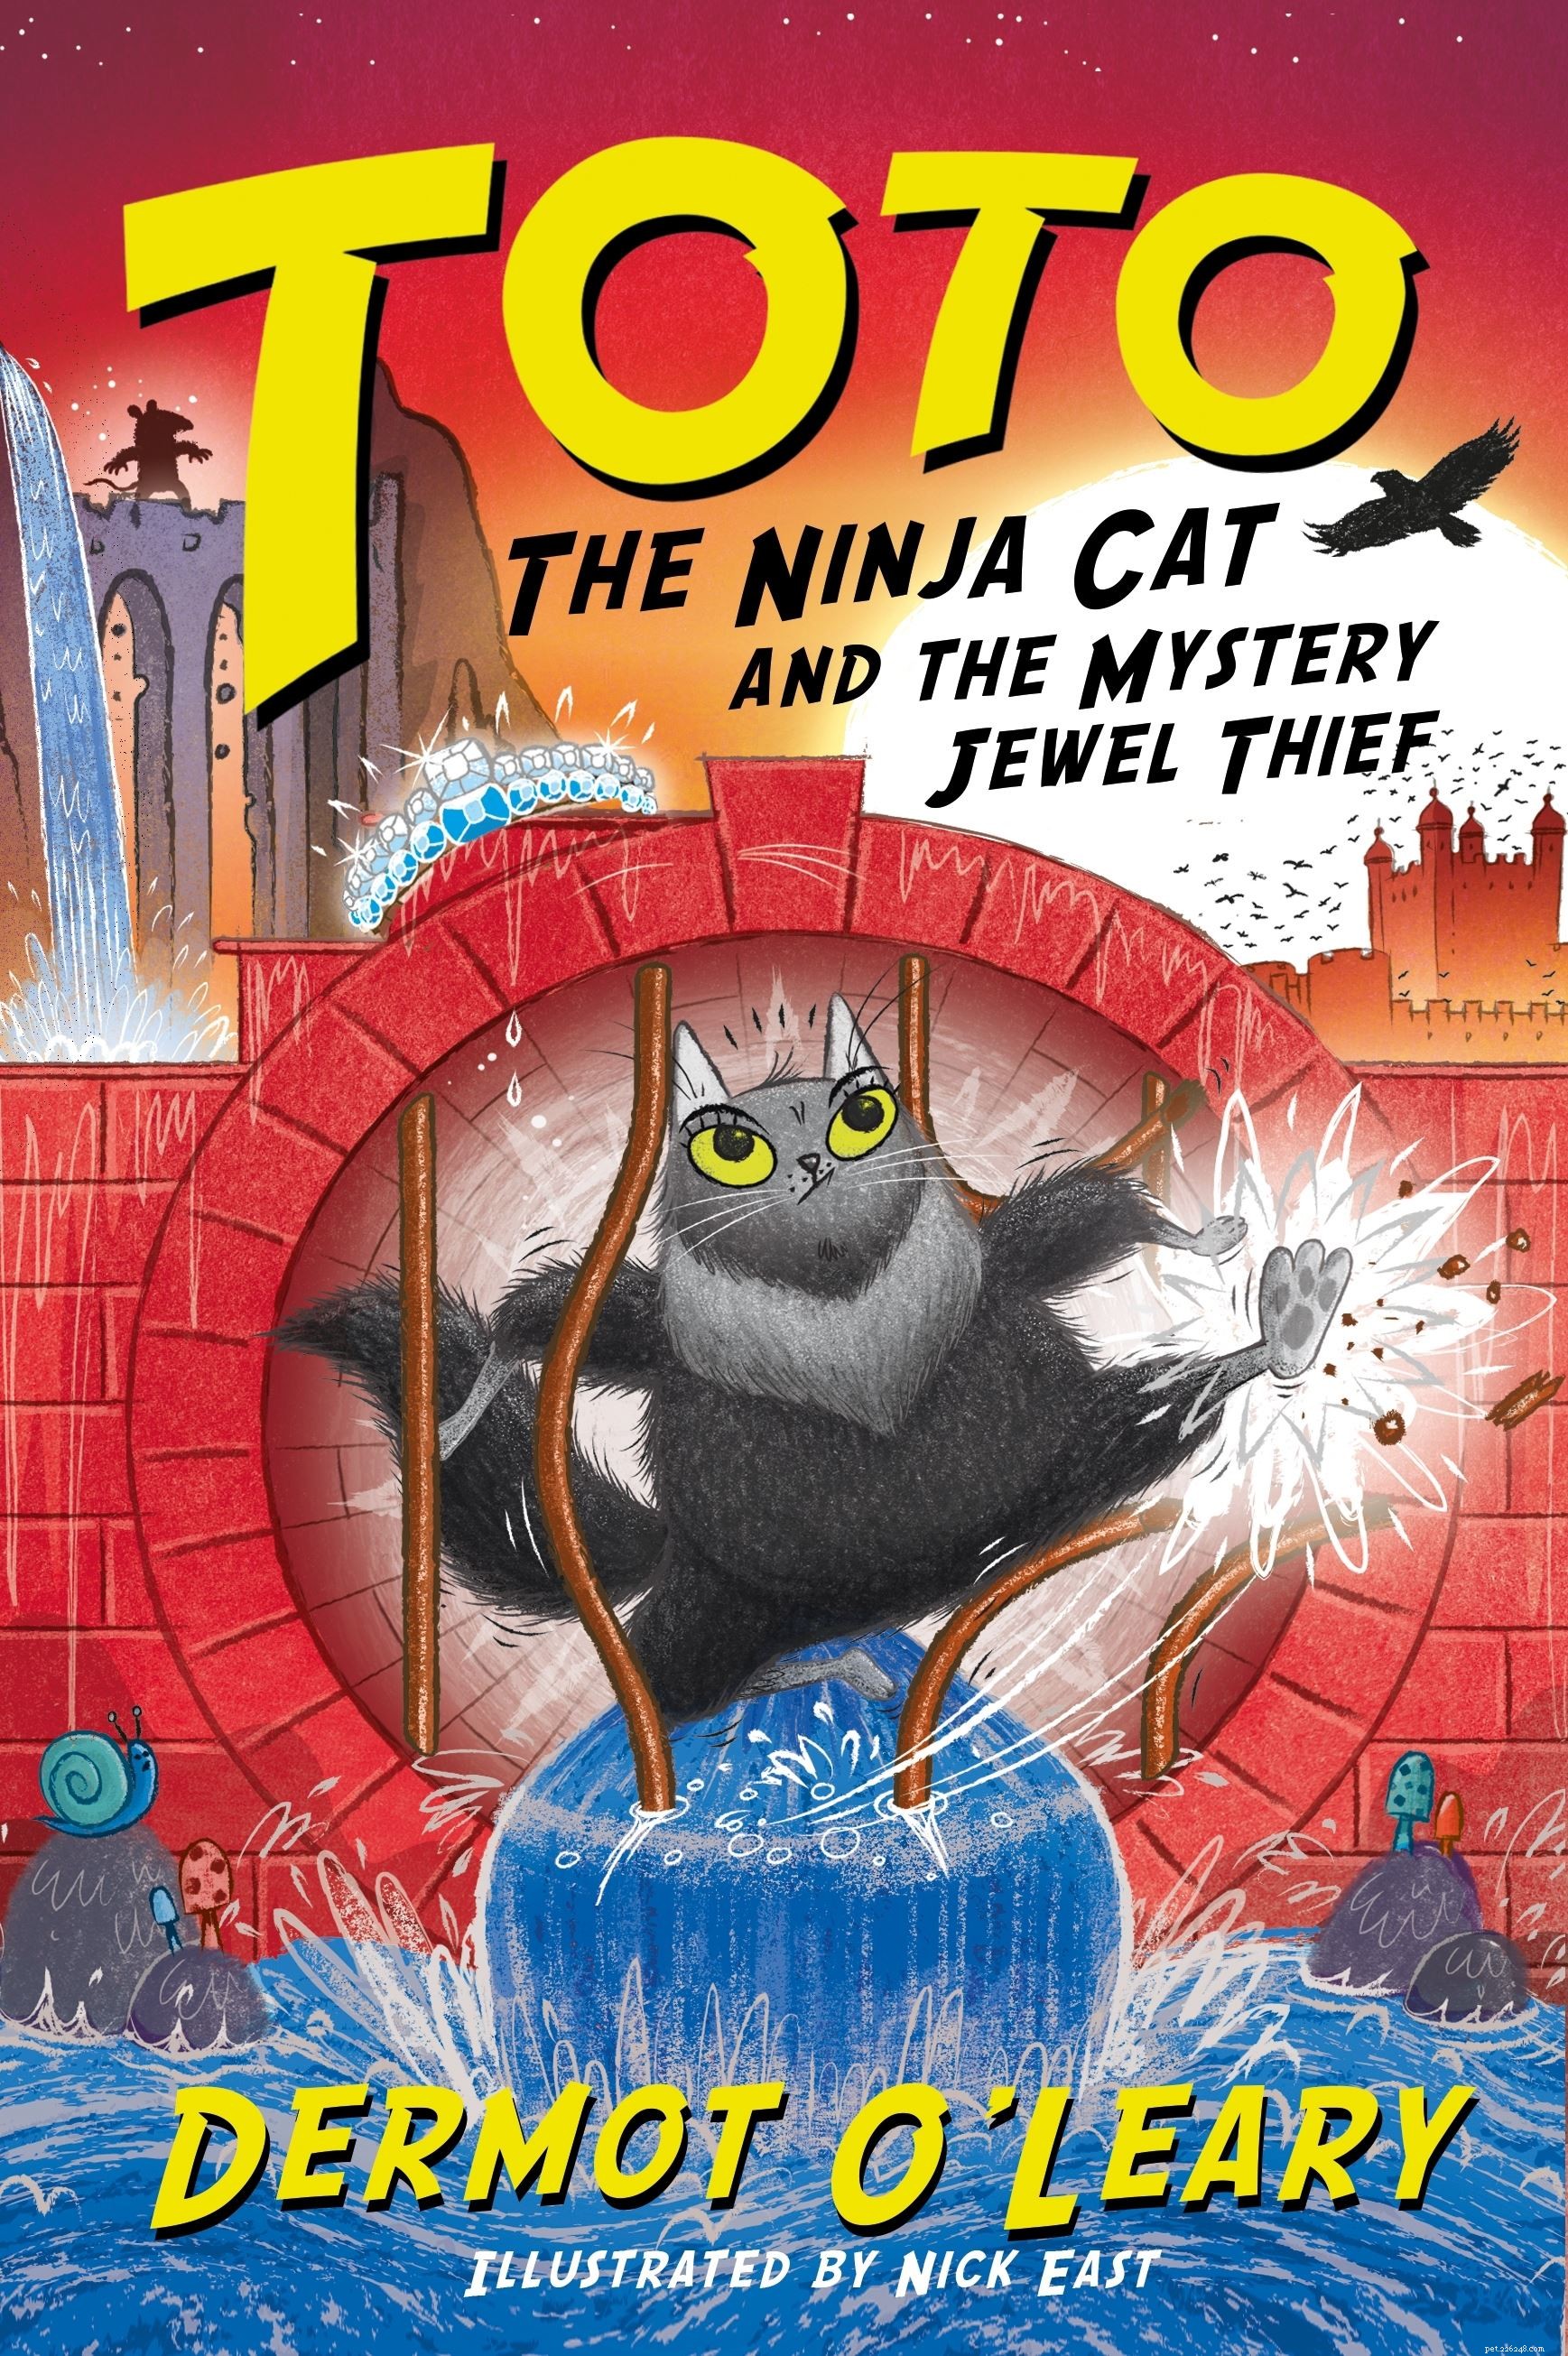 Pour célébrer le lancement de son nouveau livre Toto the Ninja Cat, Dermot O Leary répond aux questions de Cats Protection et de jeunes fans de chats 